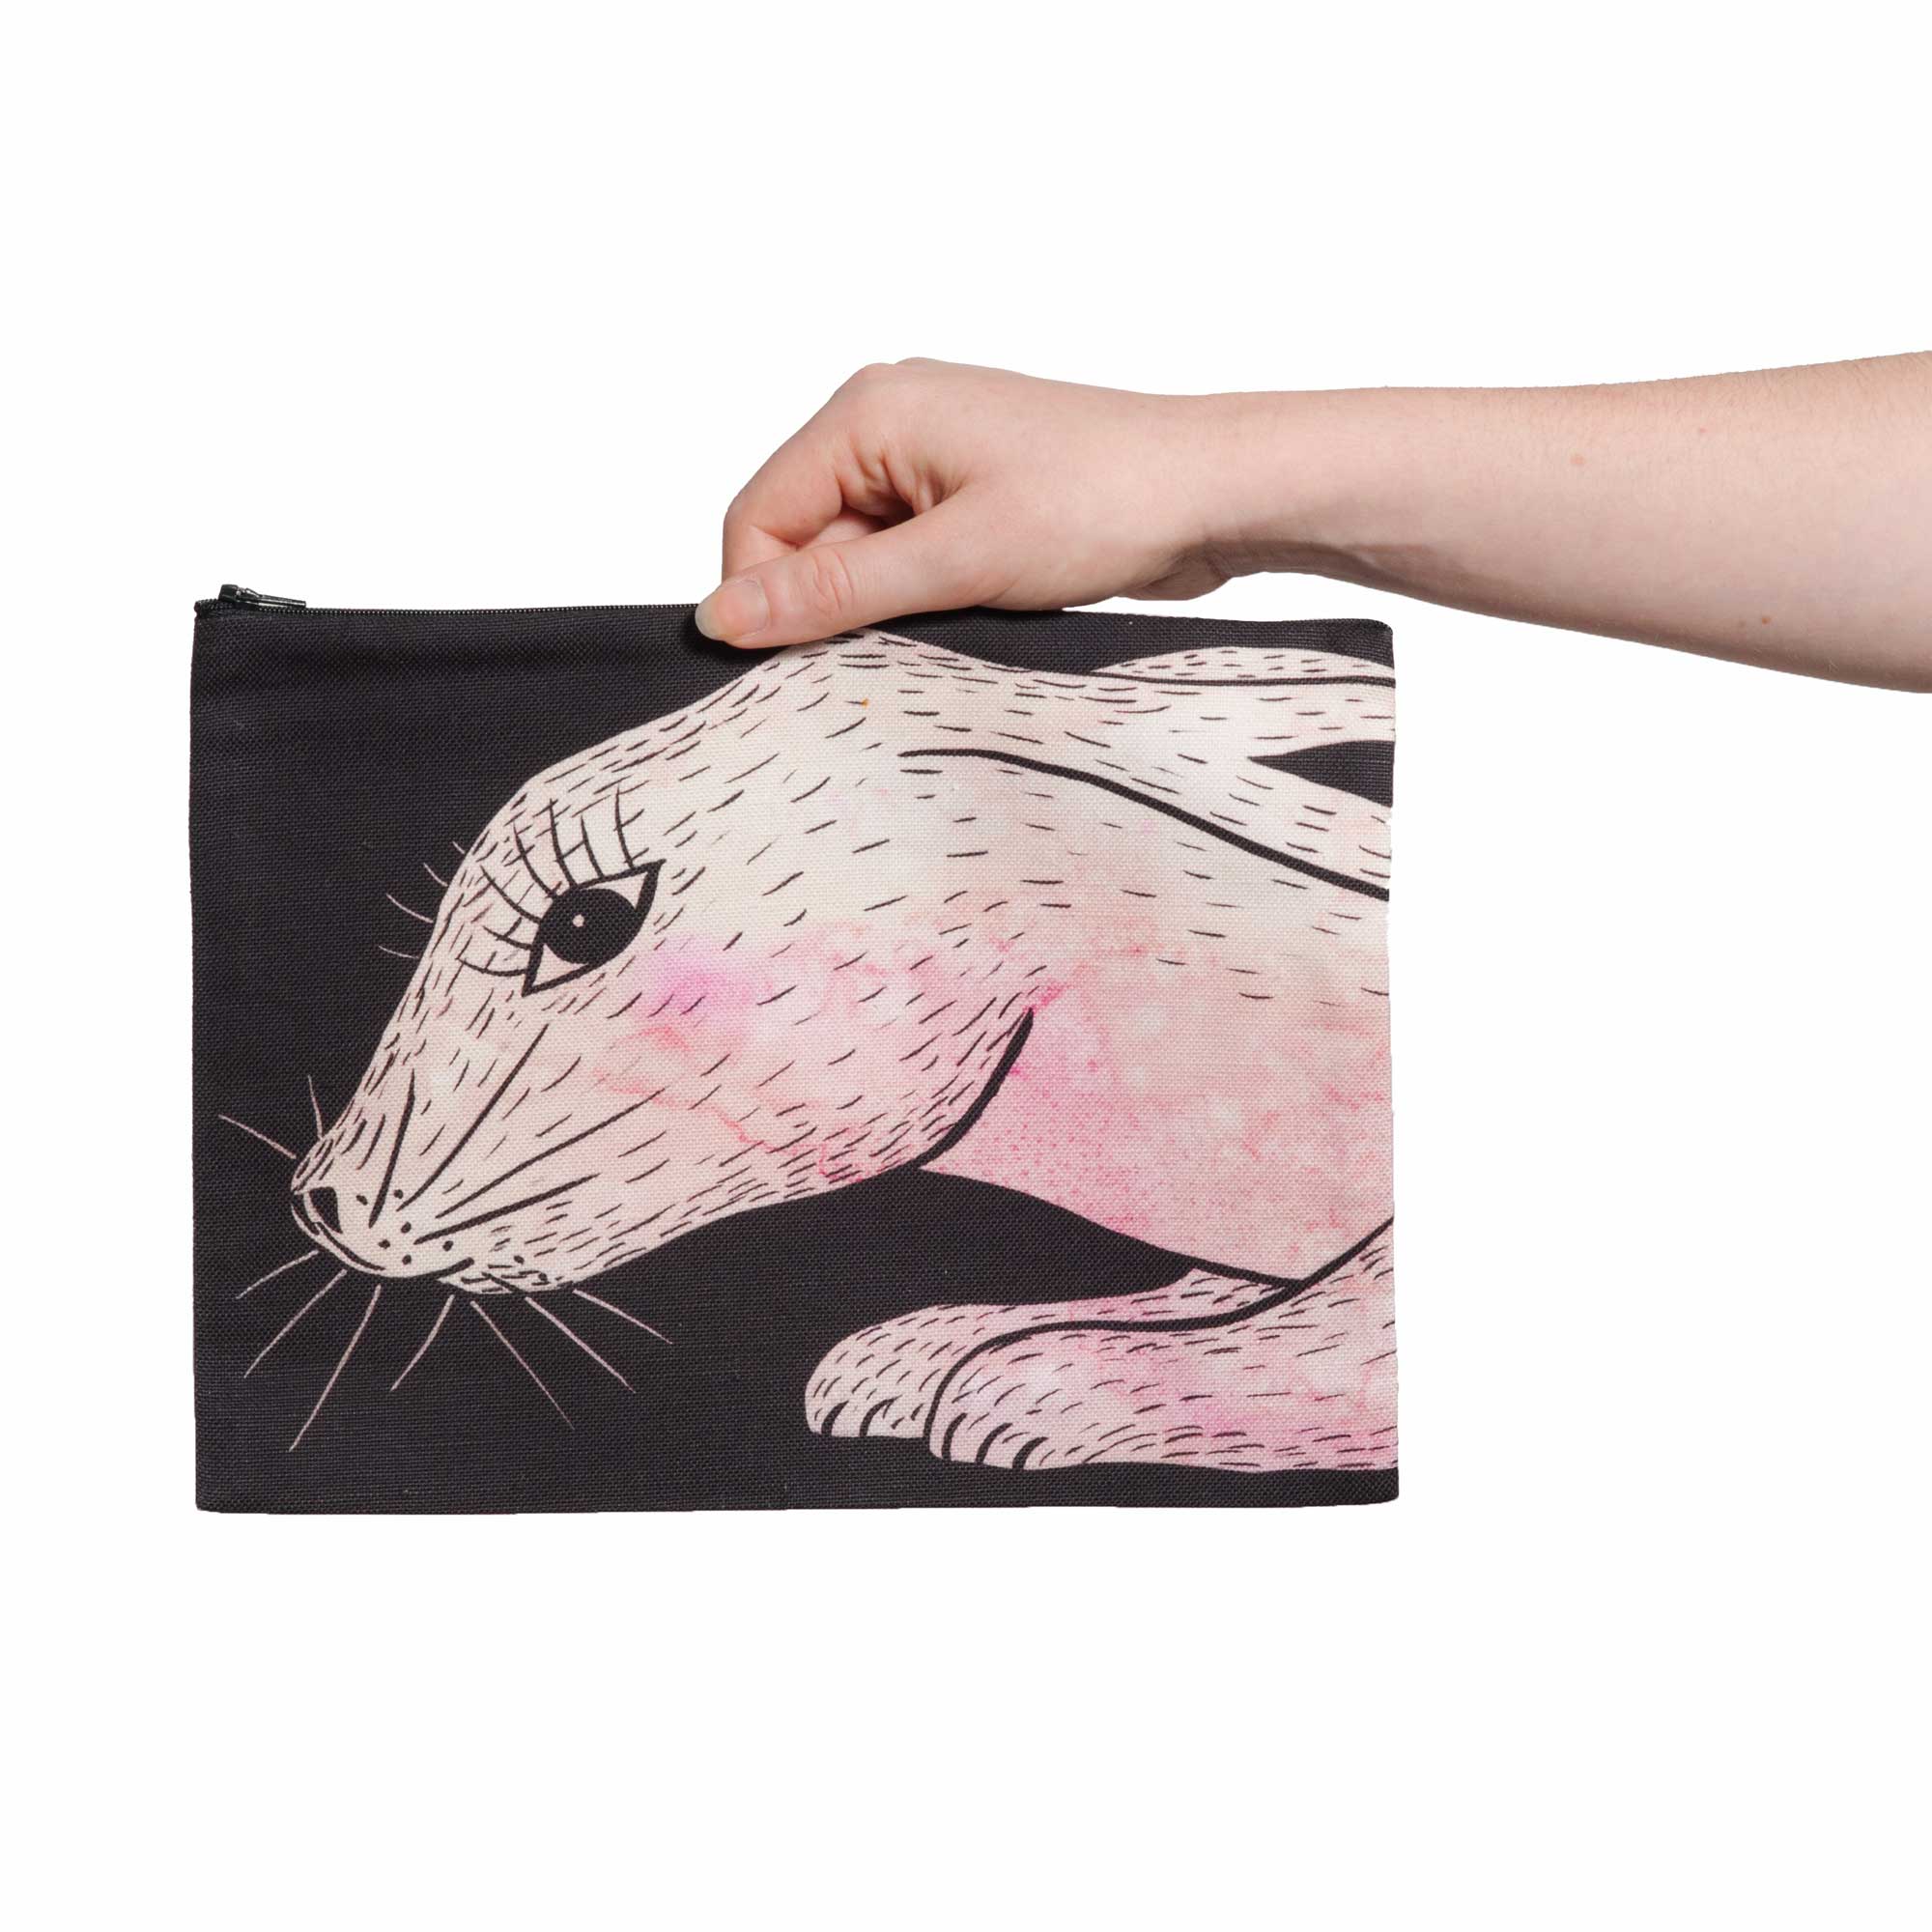 Une pochette taille L de la collection Fourrure de Céline Dominiak, avec une tête de lapin rose sur fond noir, recto